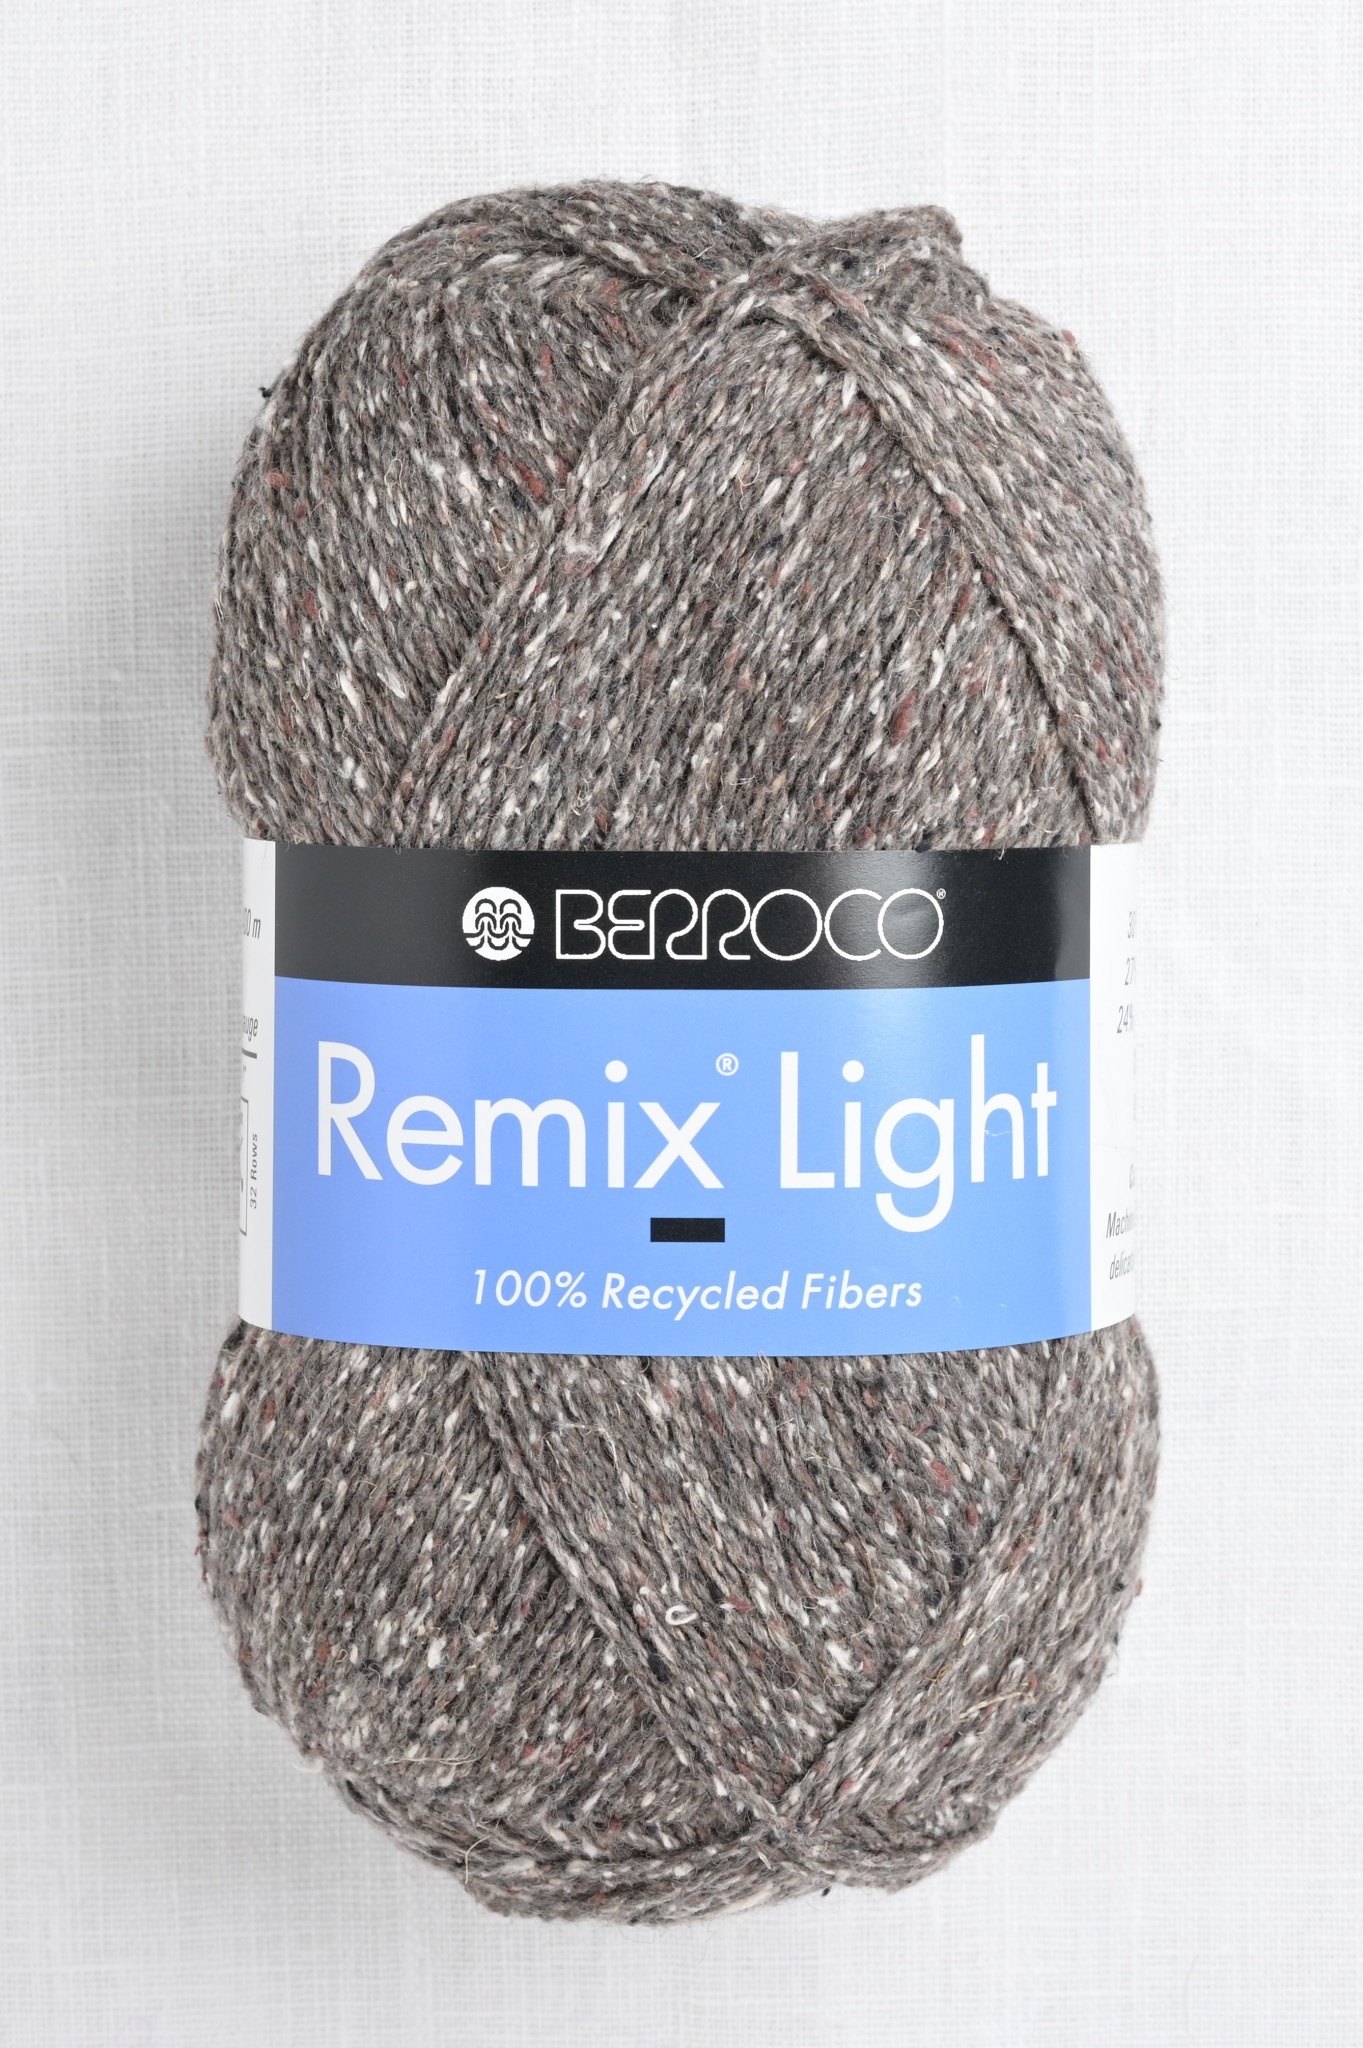 Berroco Remix Light 6933 Patina - Wool and Company Fine Yarn